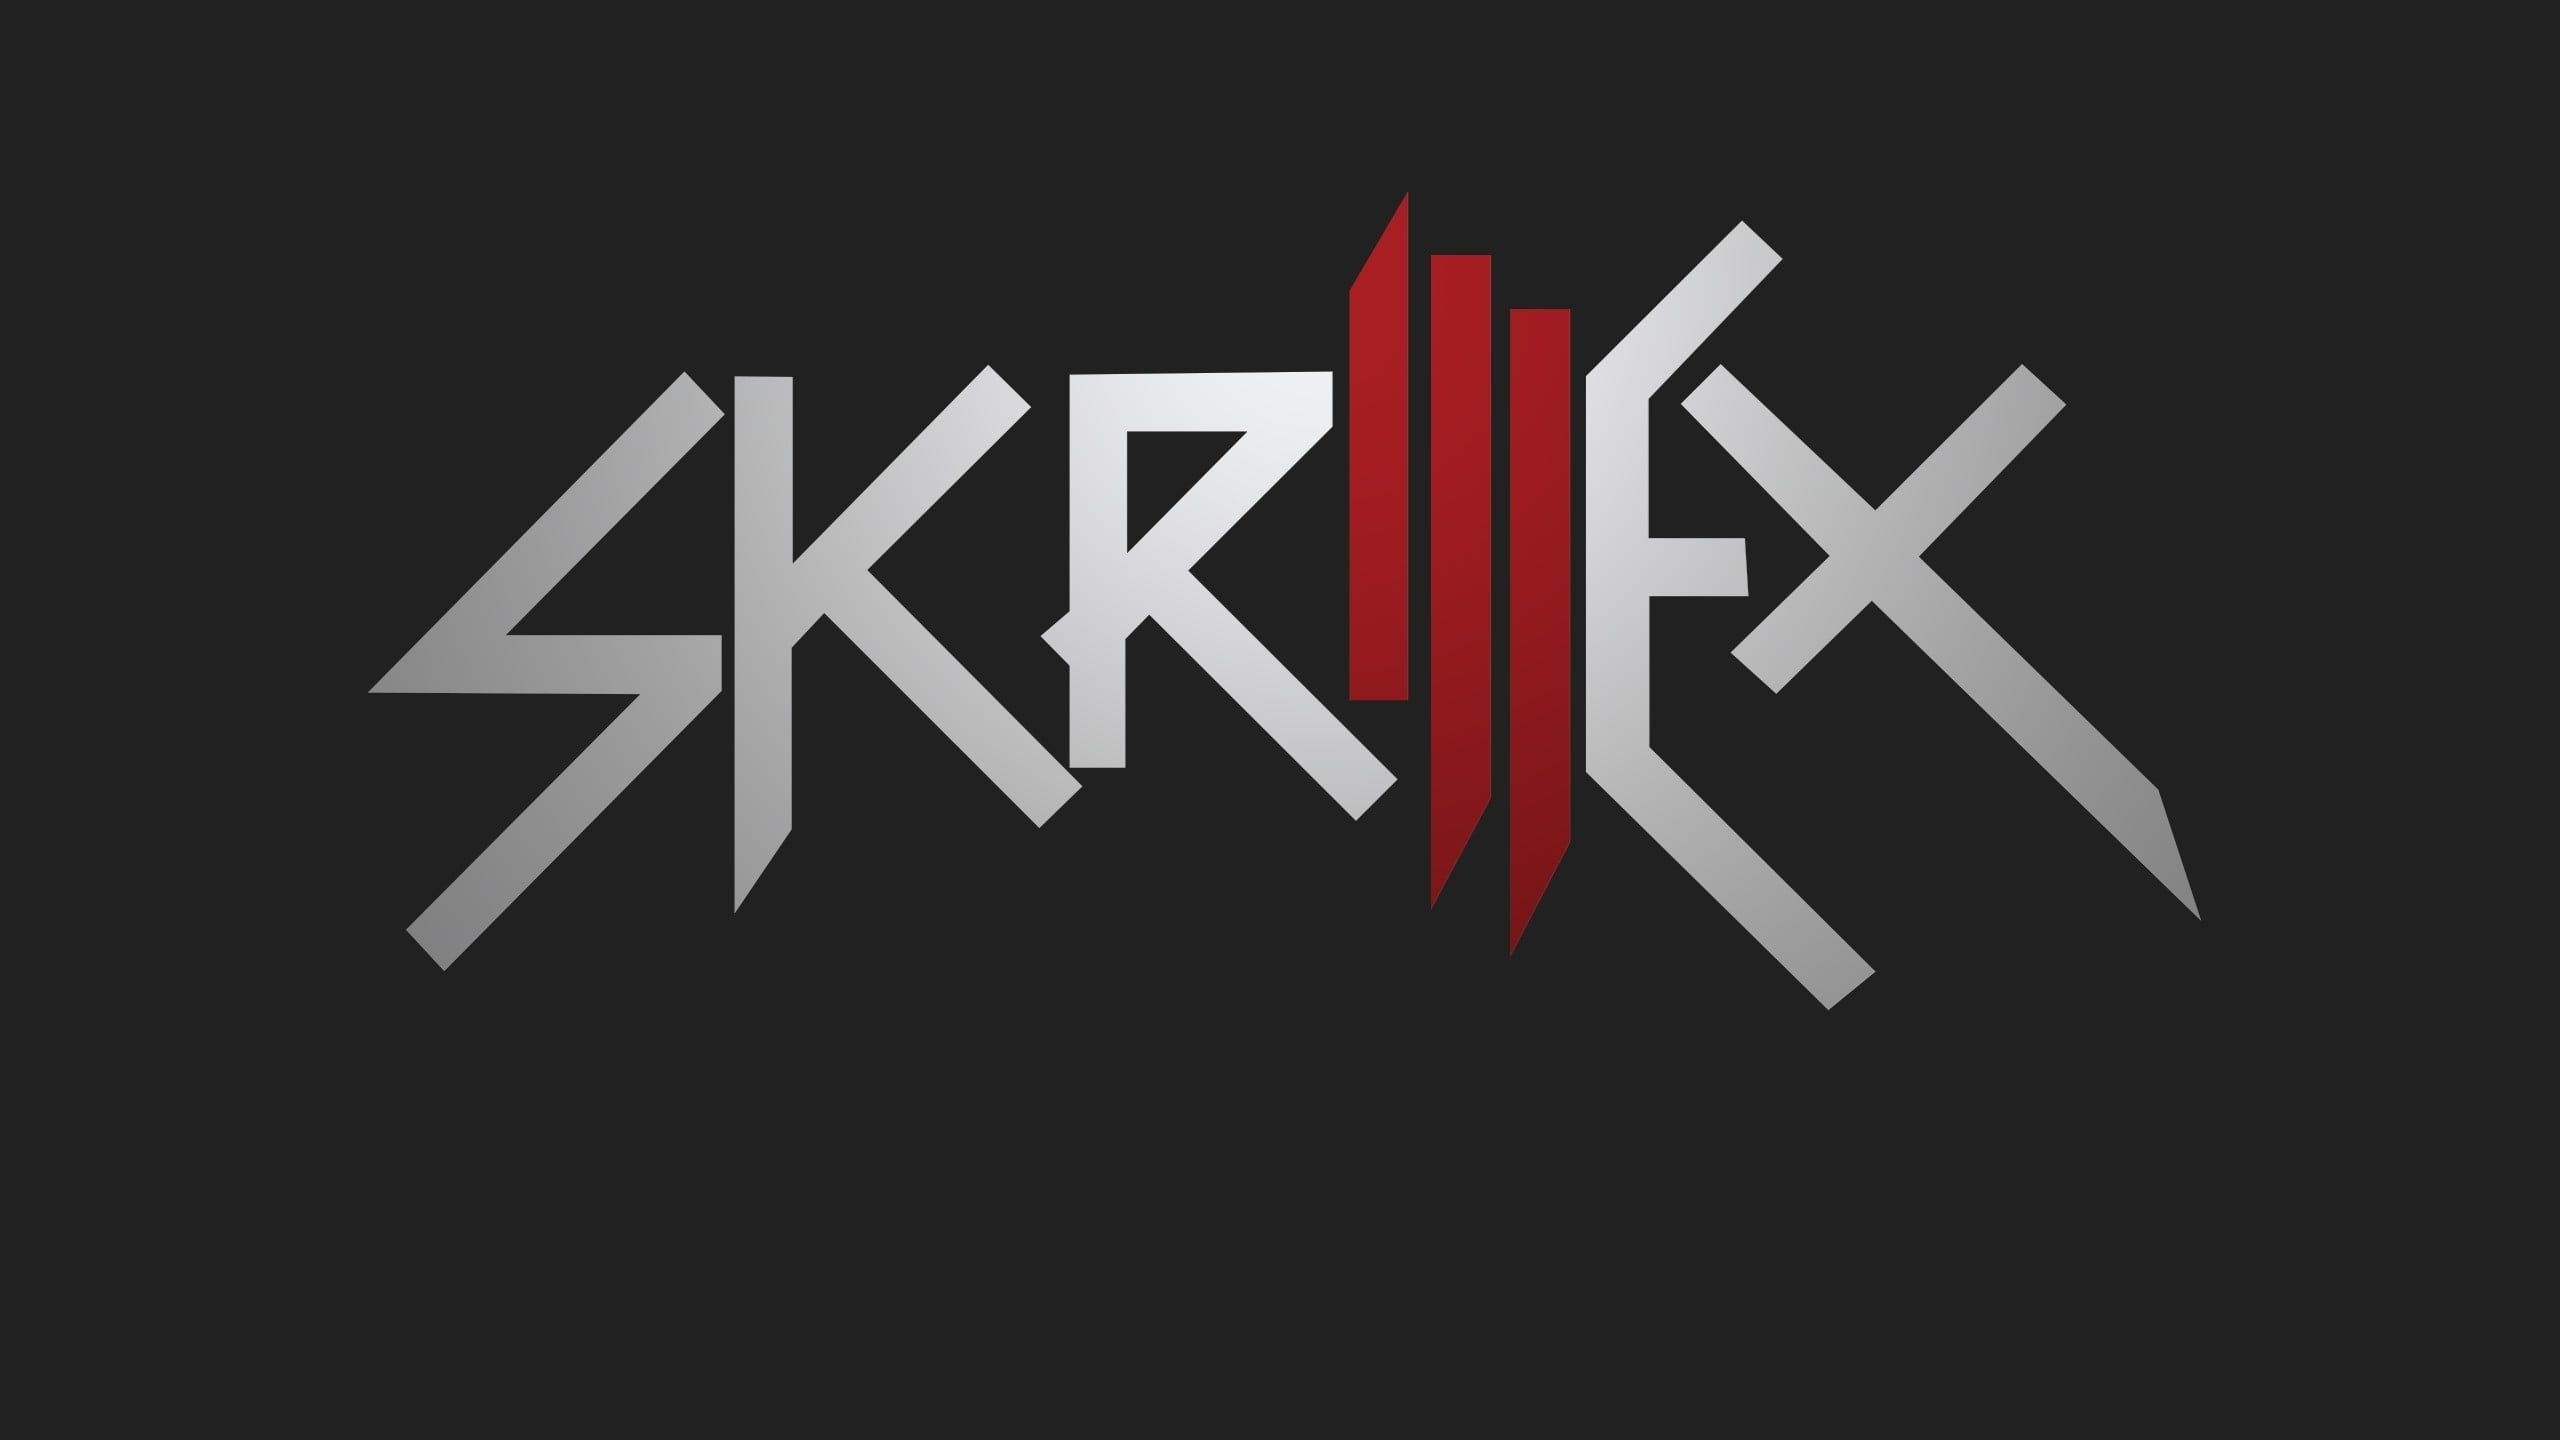 Скриллекс. Skrillex фото. Skrillex logo. Skrillex обои. Скриллекс песни